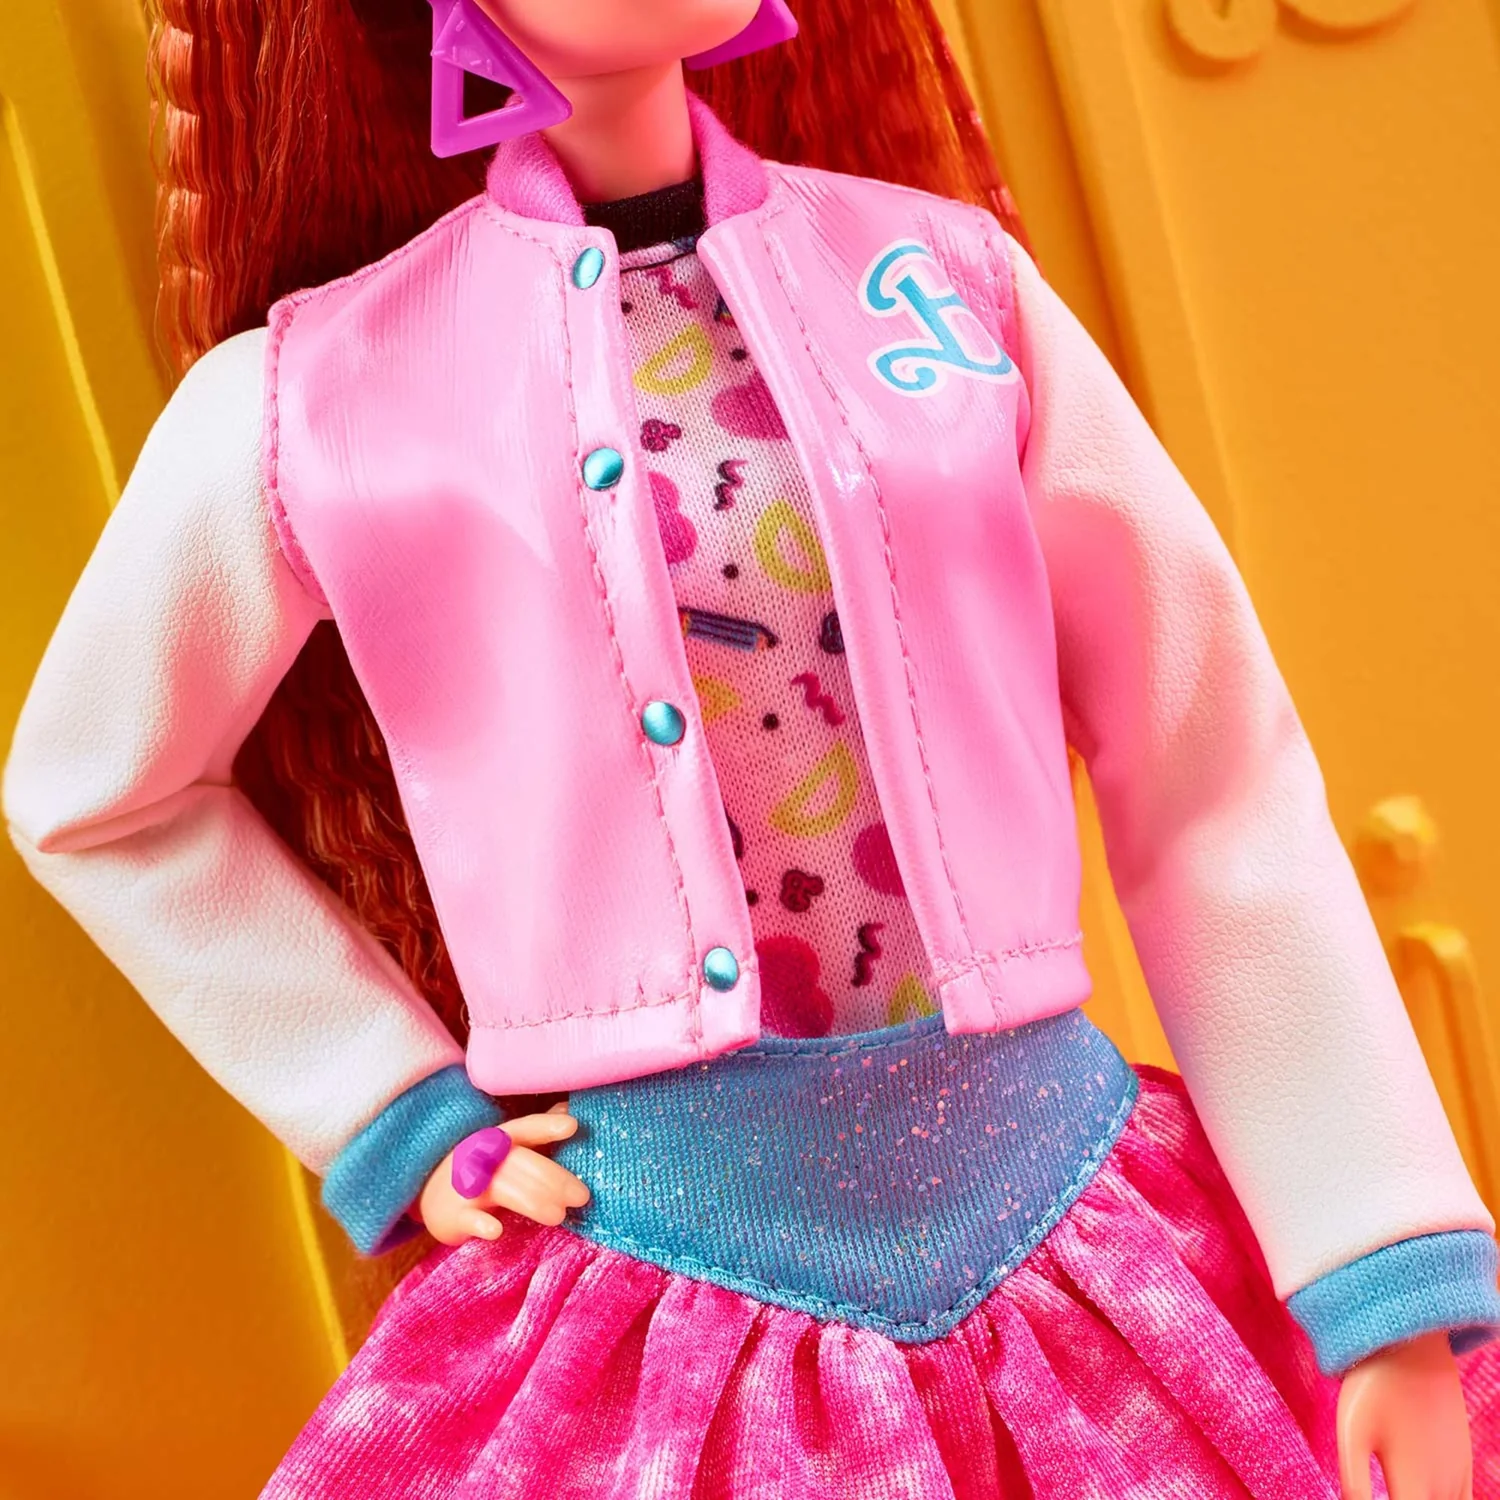 Кукла Barbie Rewind Школа в стиле 80-х годов HBY13 HBY13 - фото 6